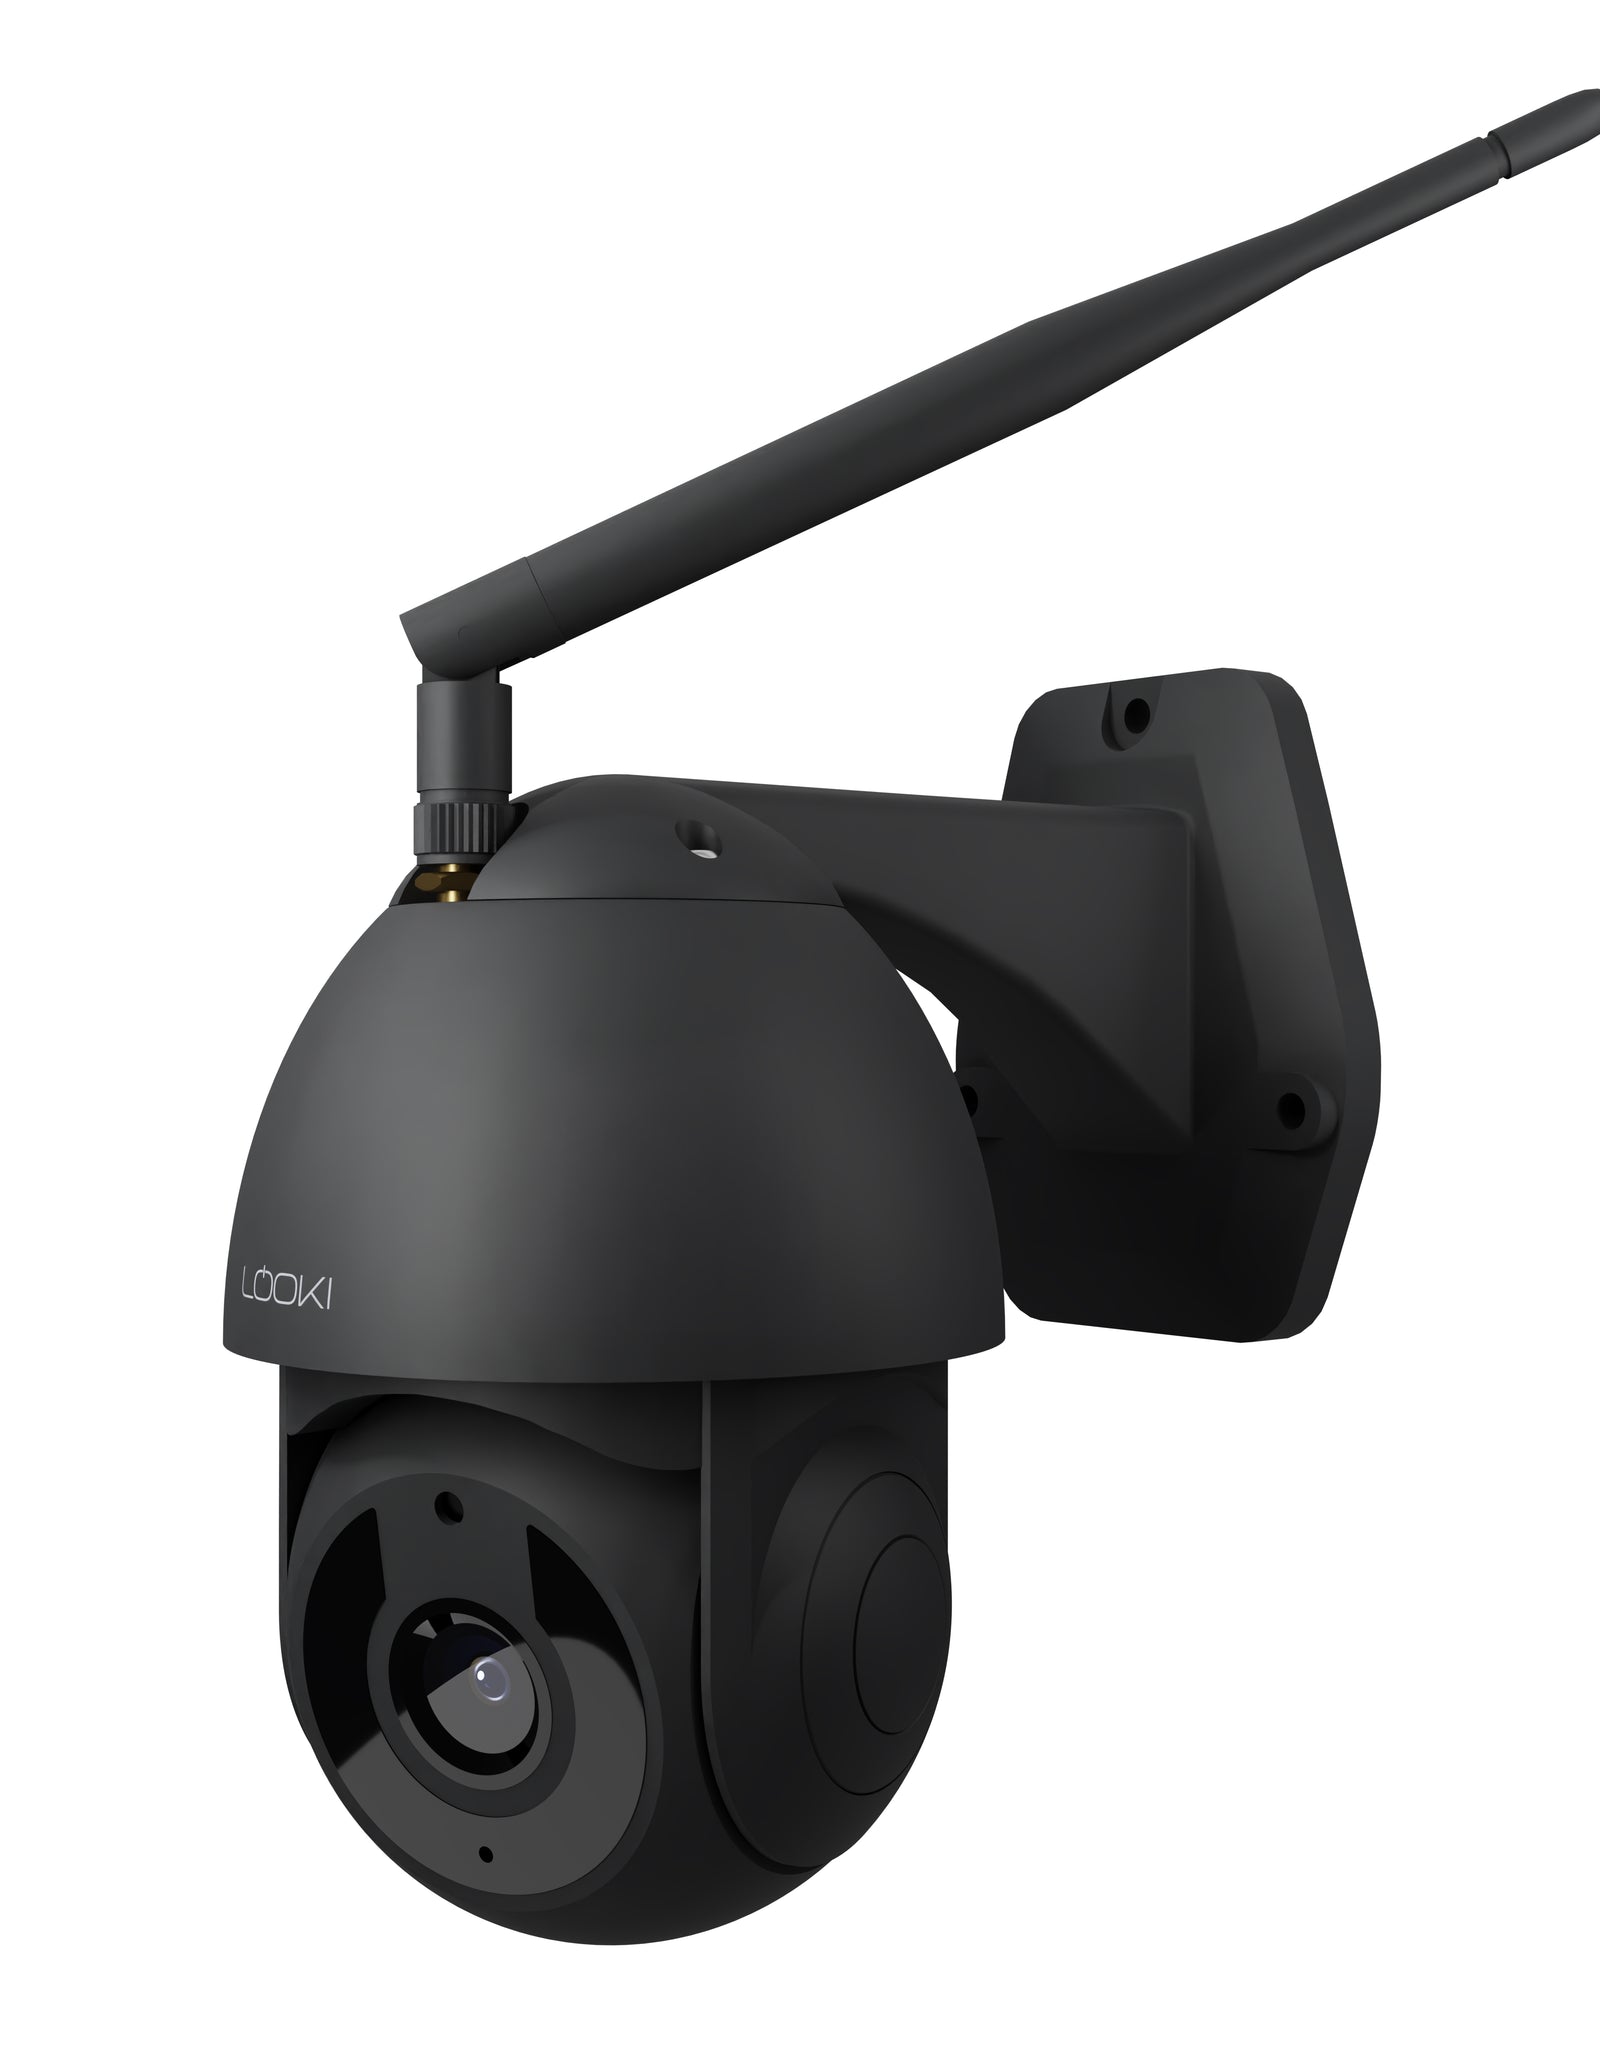 Bezwaar pedaal Inspecteren Looki 360Pro PTZ Camera (Zwart) WiFi IP Beveiligingscamera voor Buiten